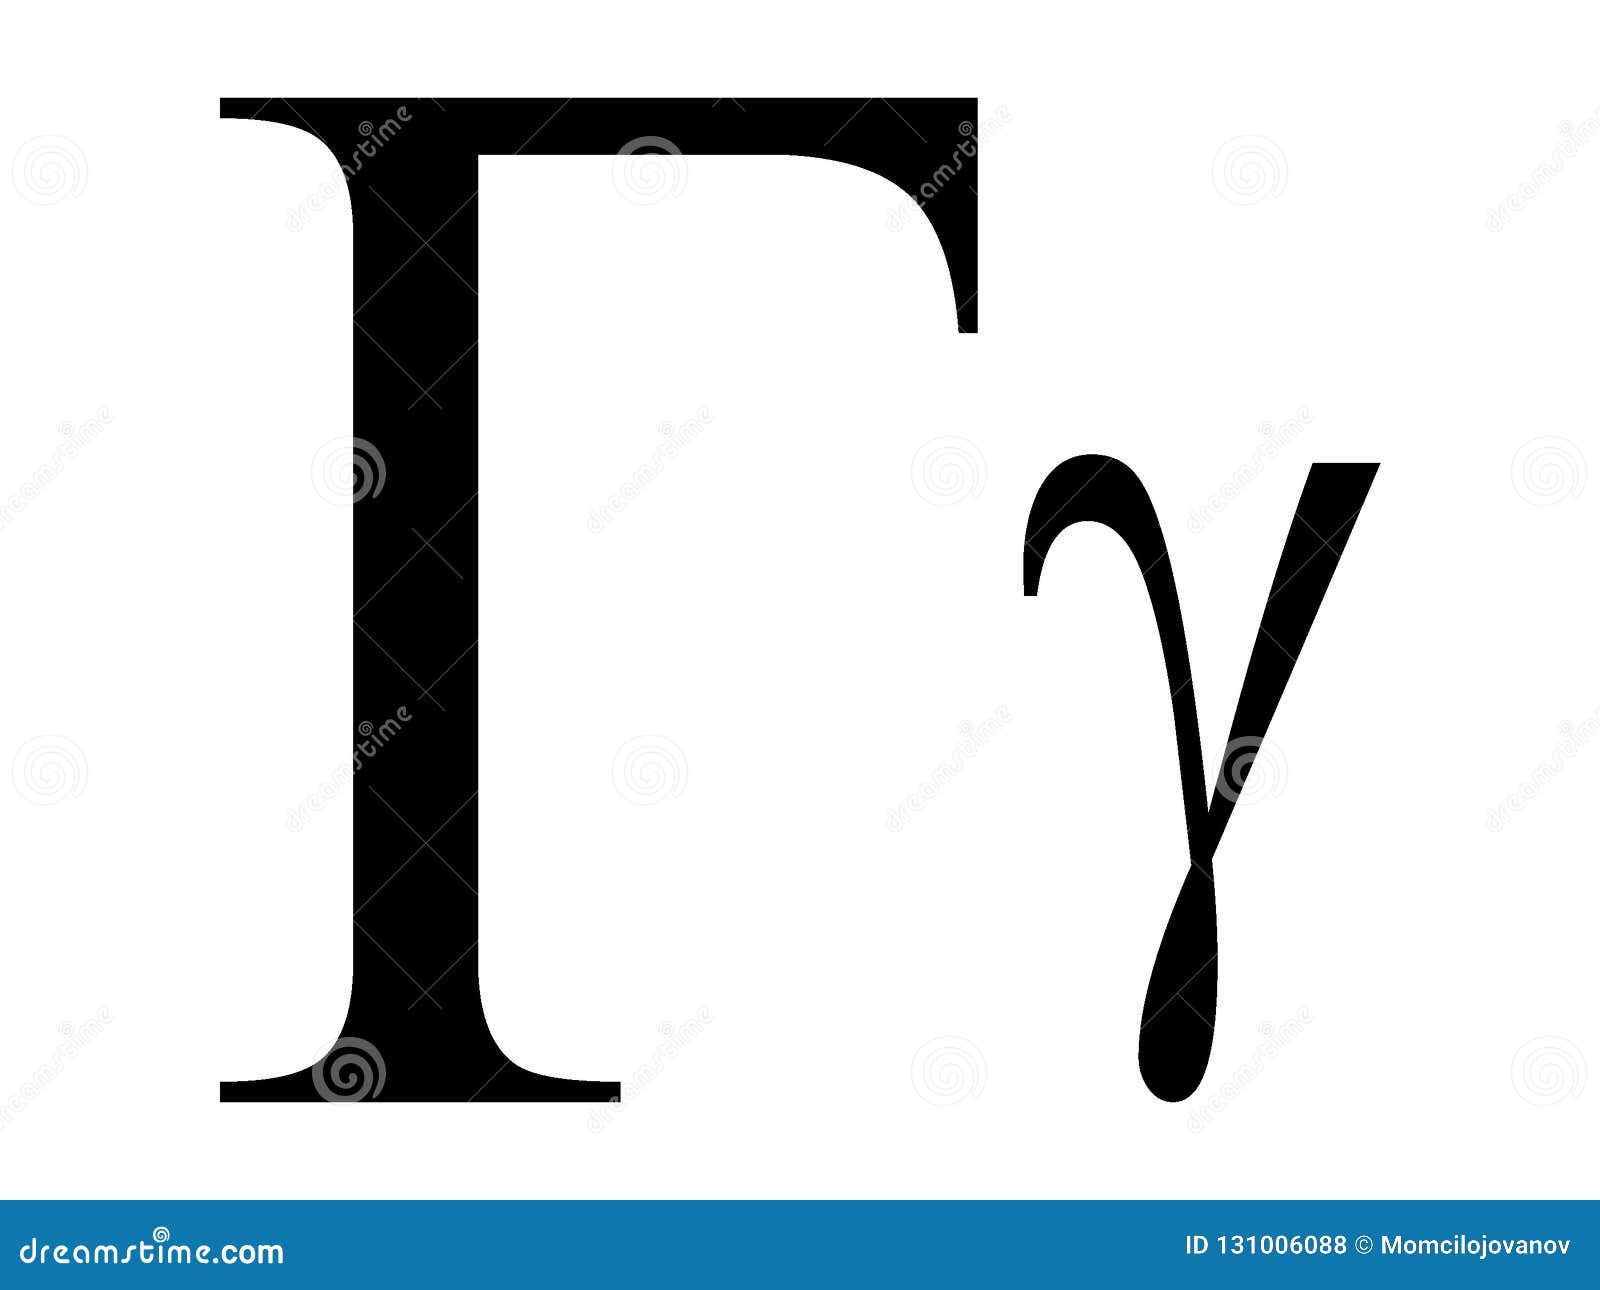 Одиннадцатая буква греческого алфавита 6. Греческая буква Эпсилон. Гамма Греческая буква. Альфа бета гамма алфавит. Тау Греческая буква.